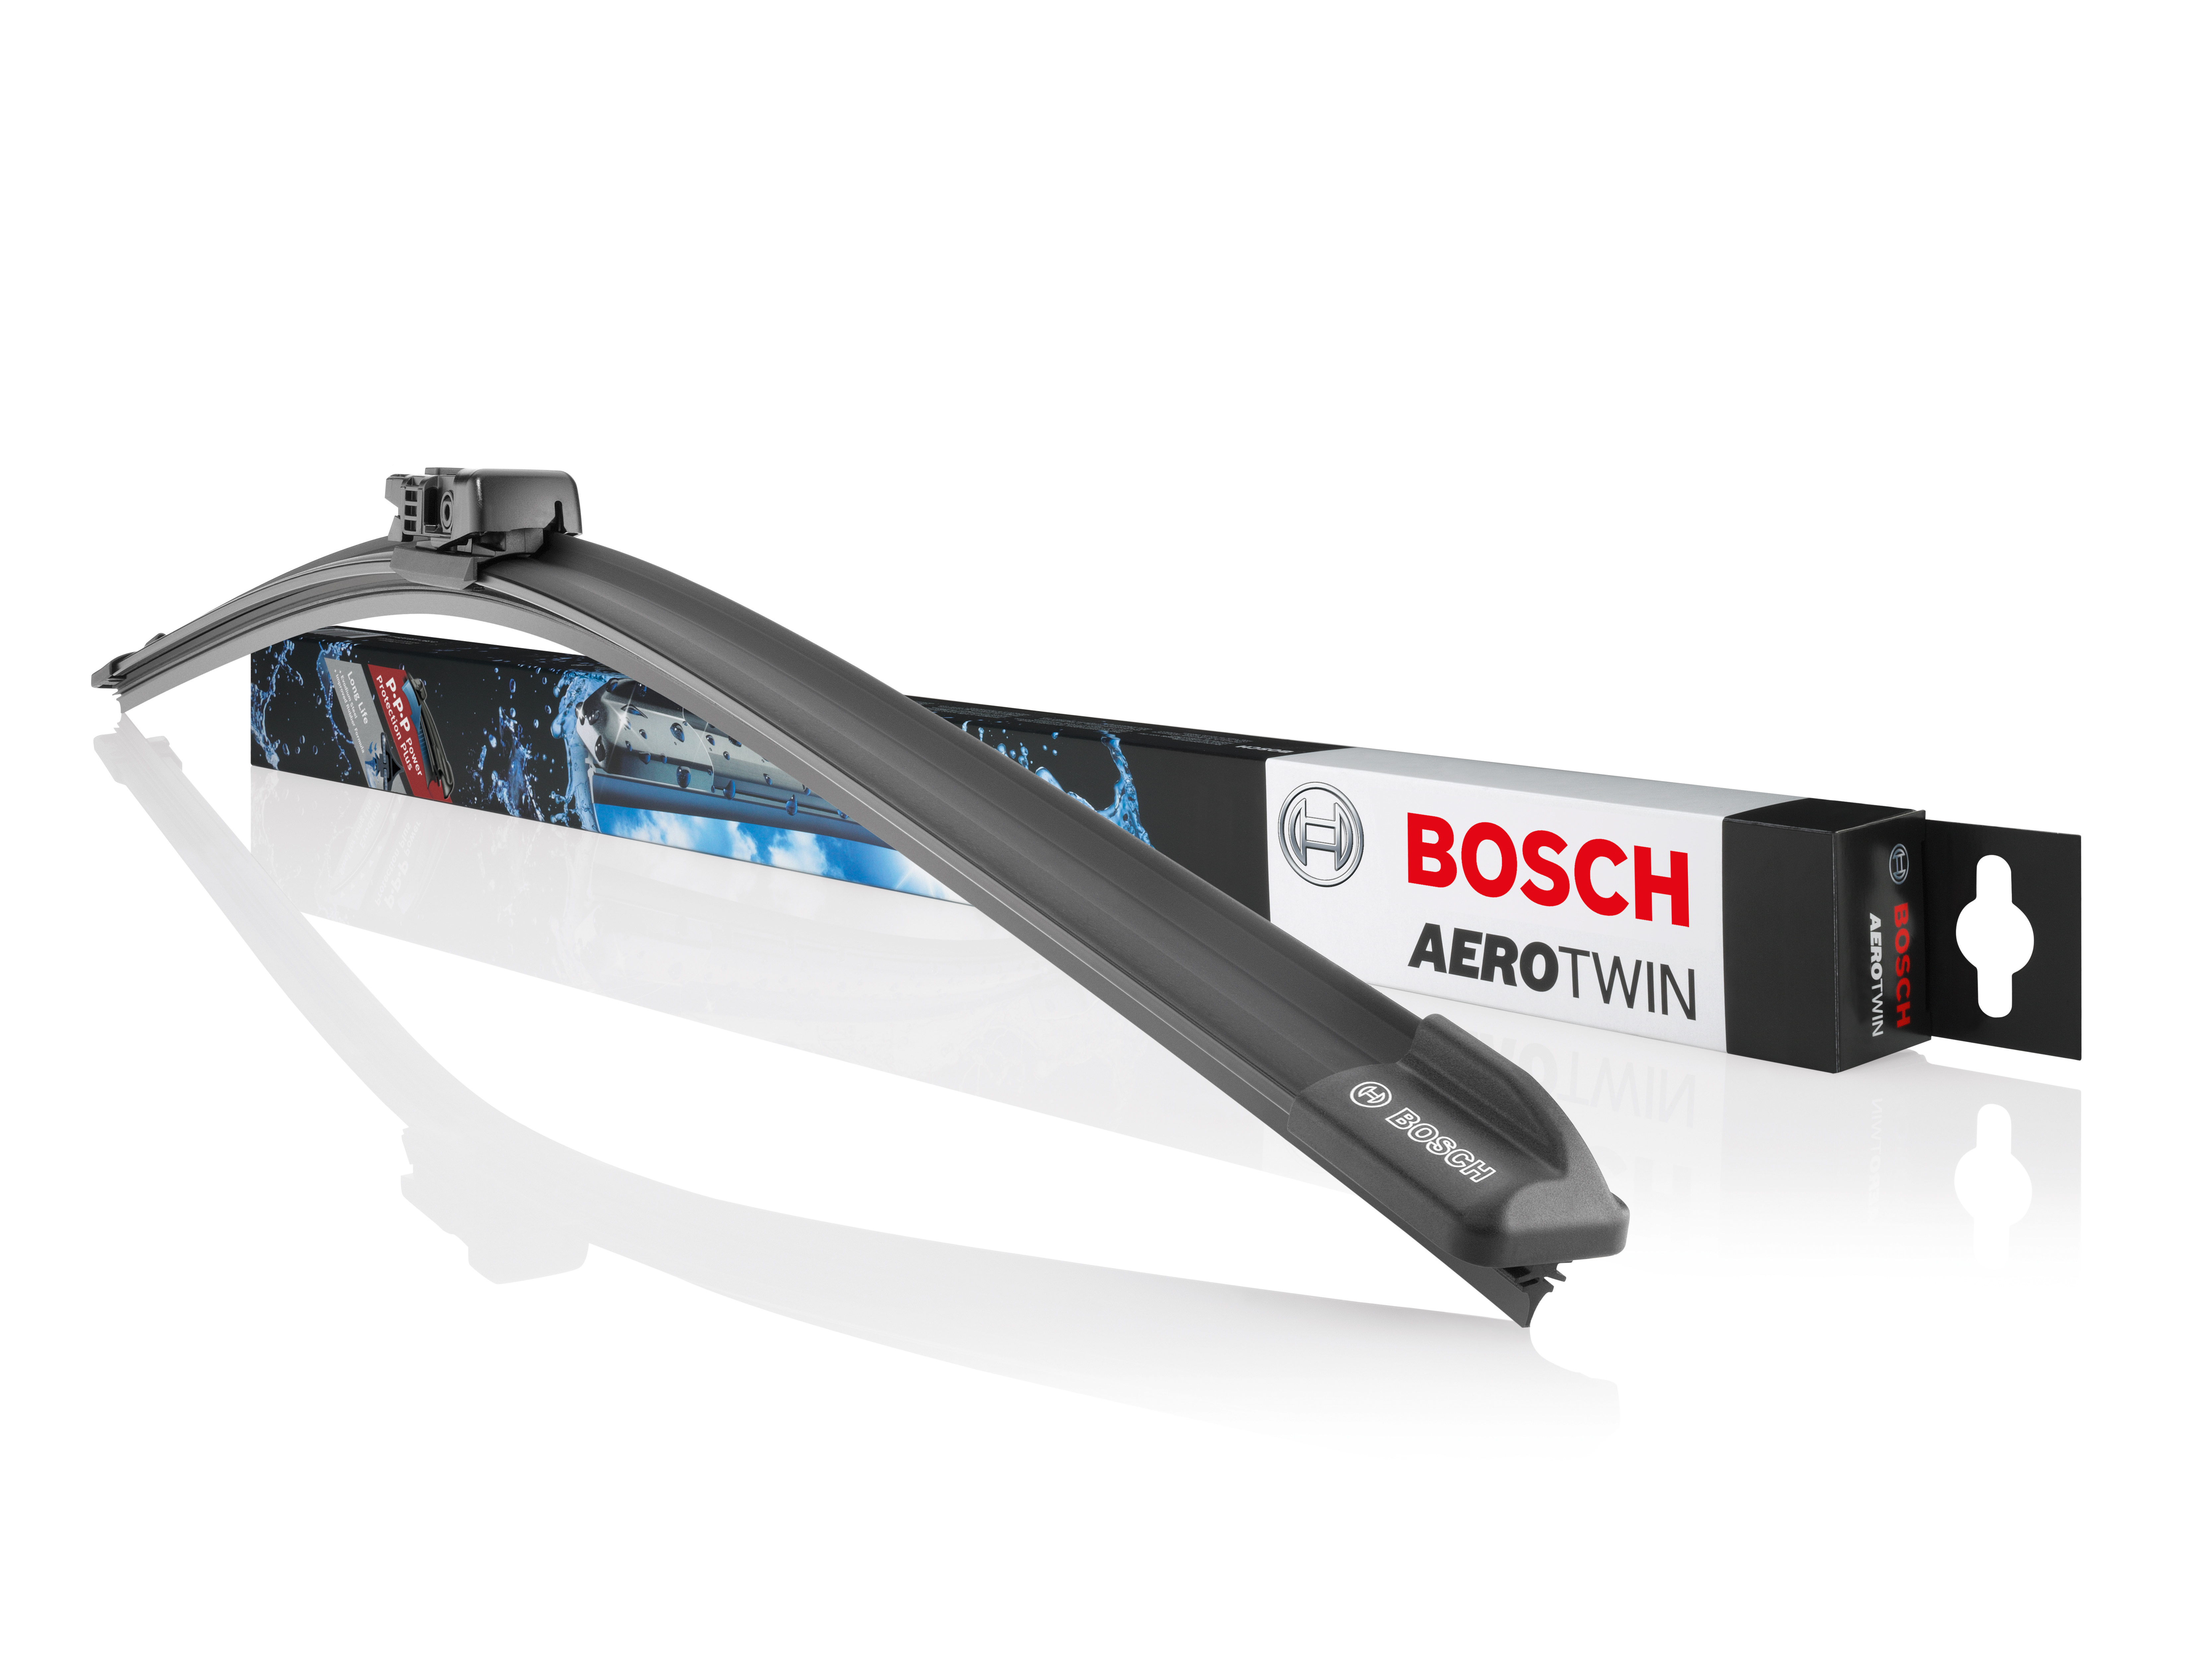 Tergicristalli Bosch Aerotwin con nuovo profilo della spazzola in gomma